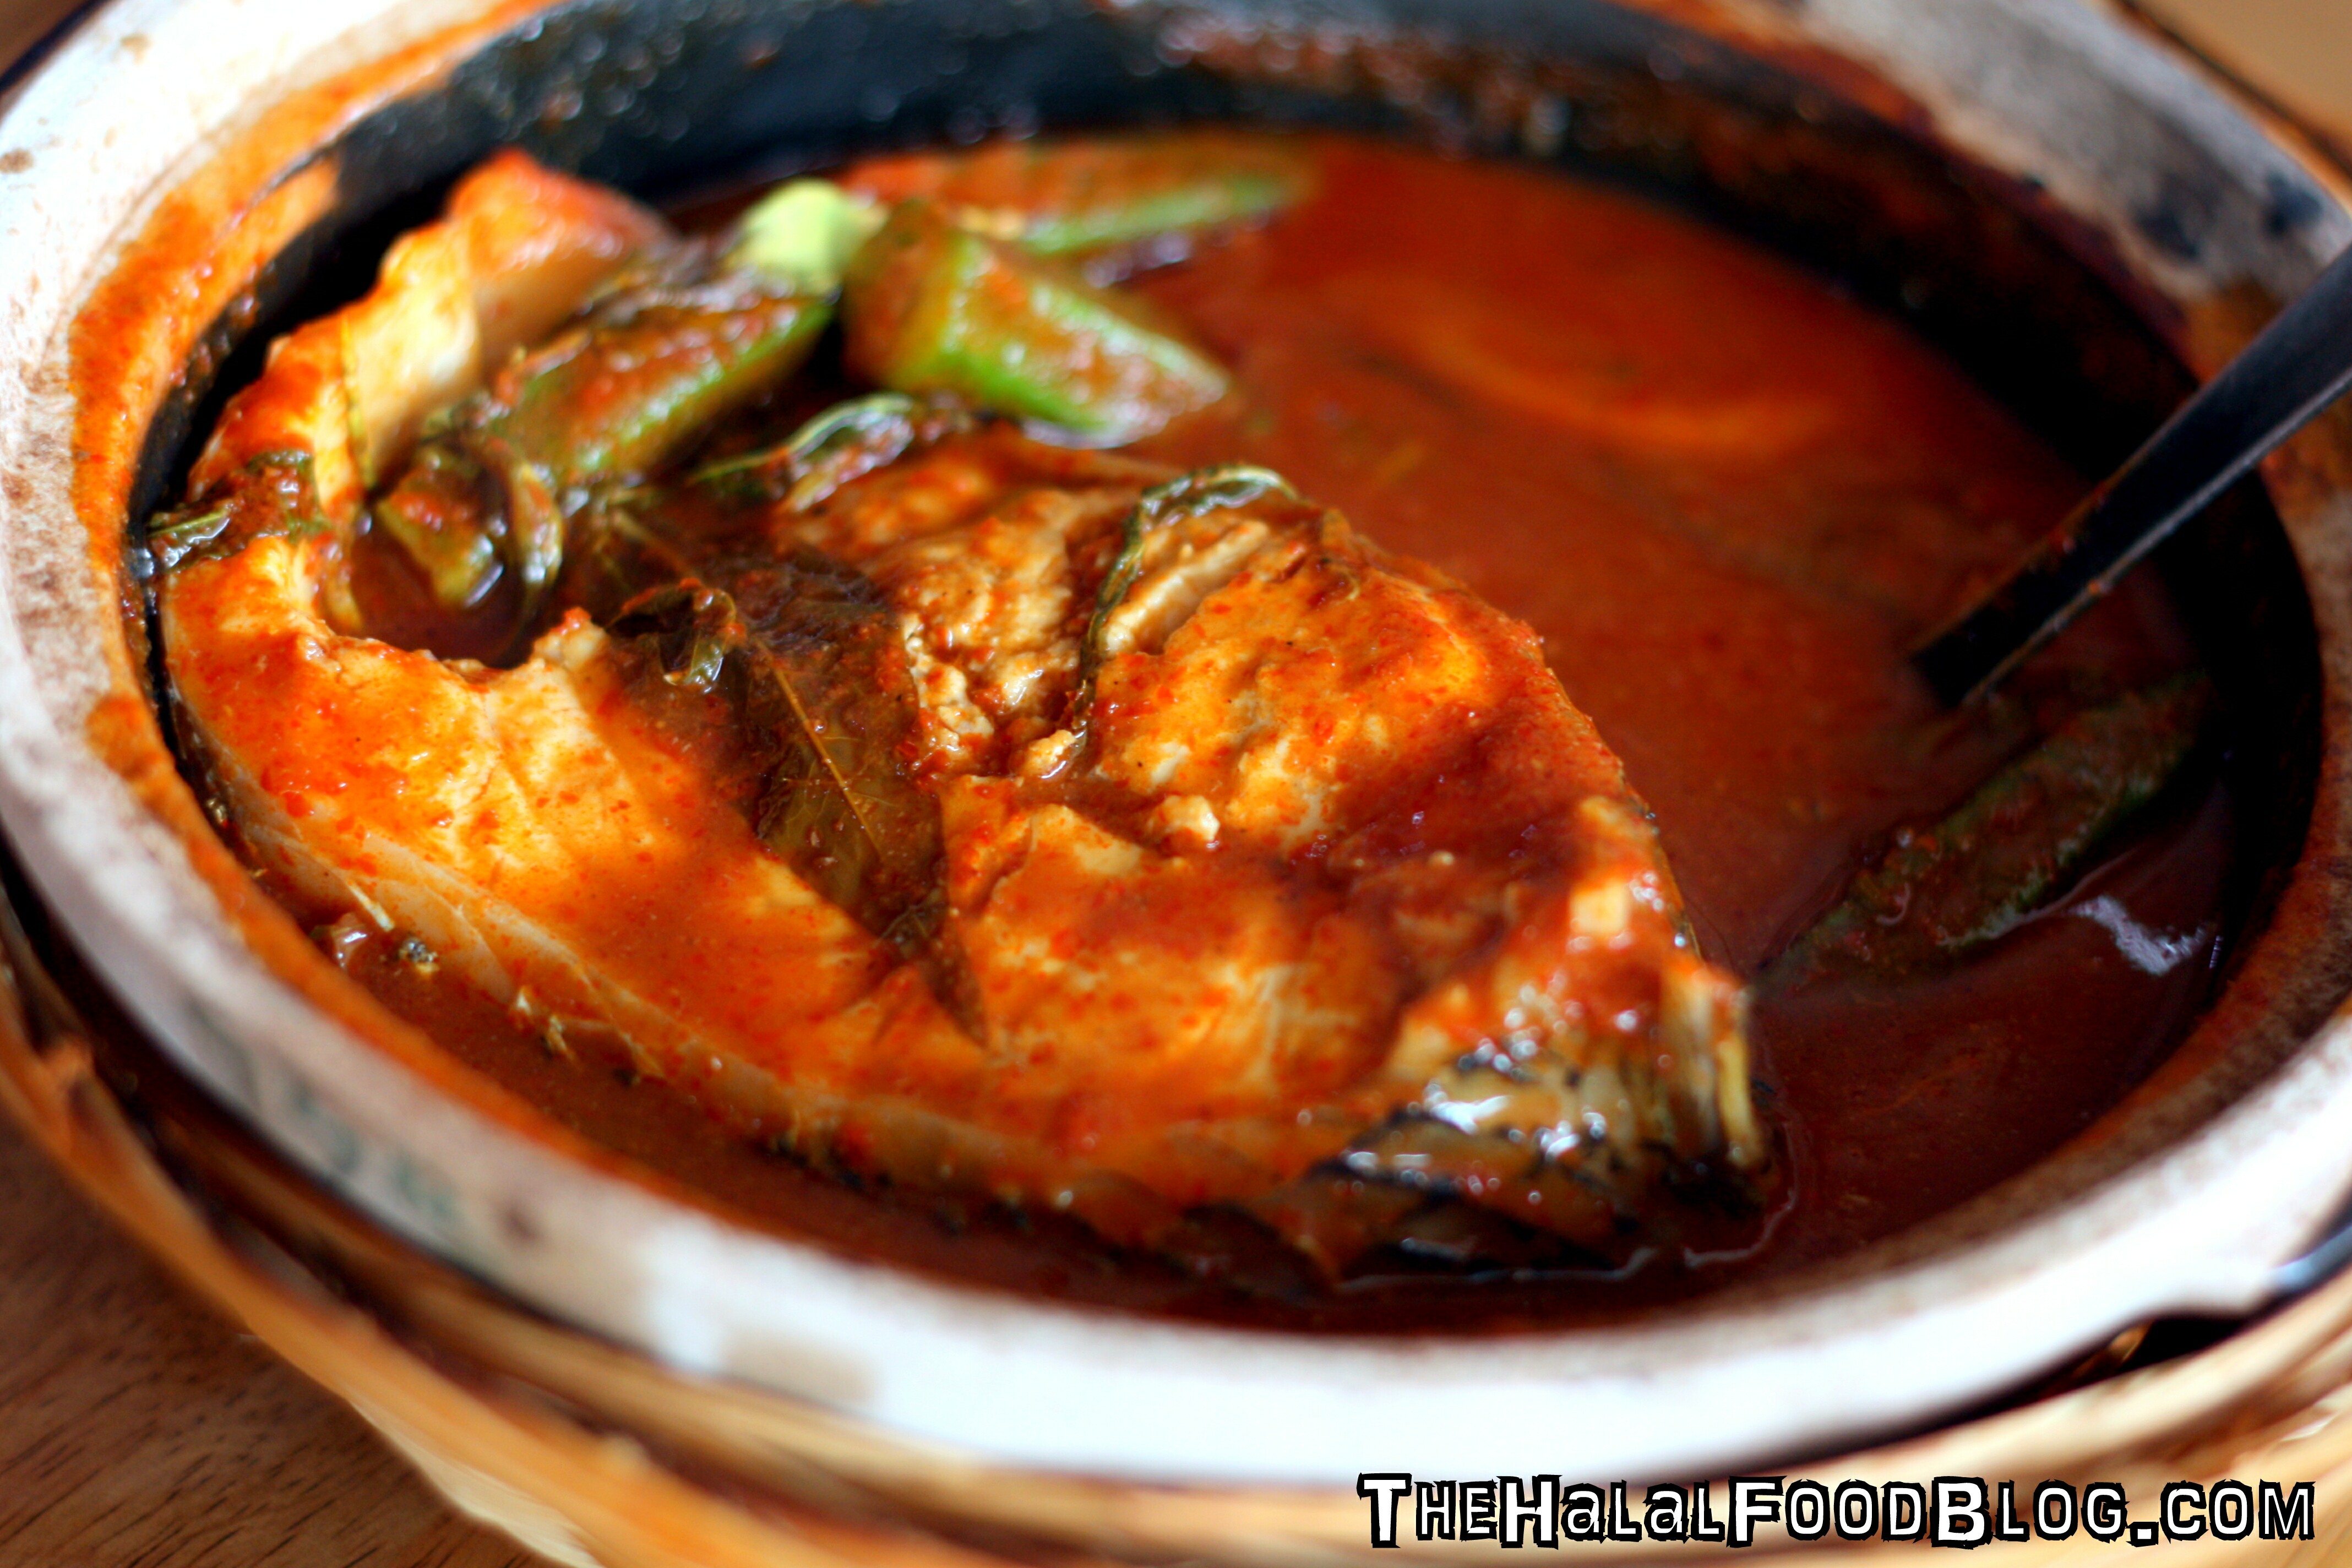 Anisofea Asam Pedas Johor Asli  The Halal Food Blog